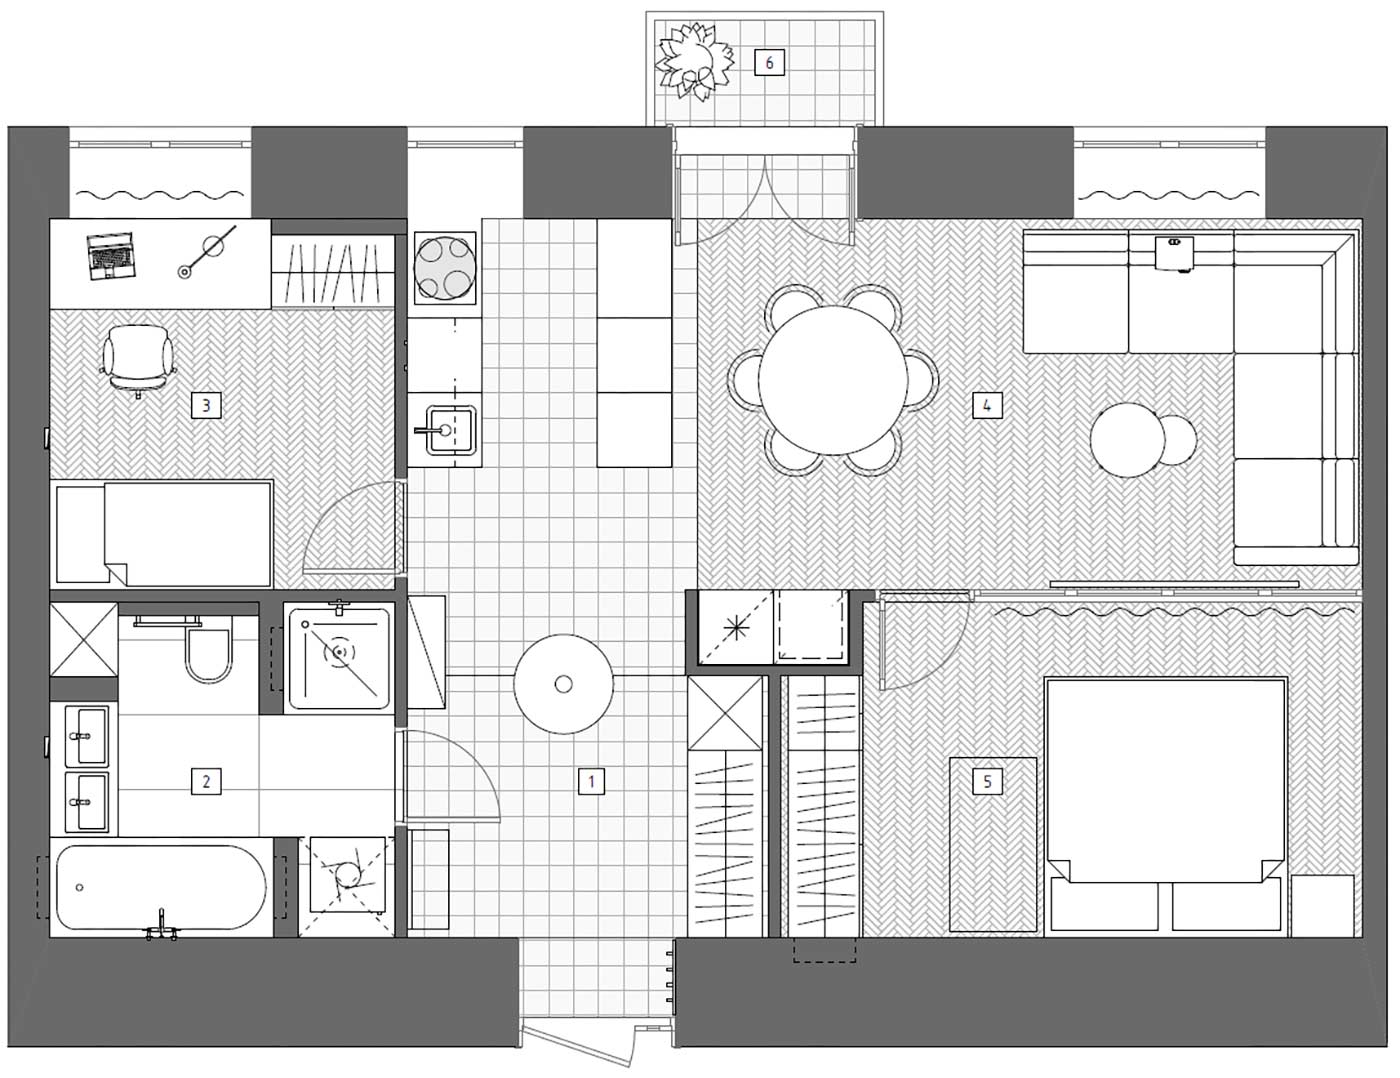 Sơ đồ thiết kế căn hộ diện tích 61m² do CHI DESIGN cung cấp.